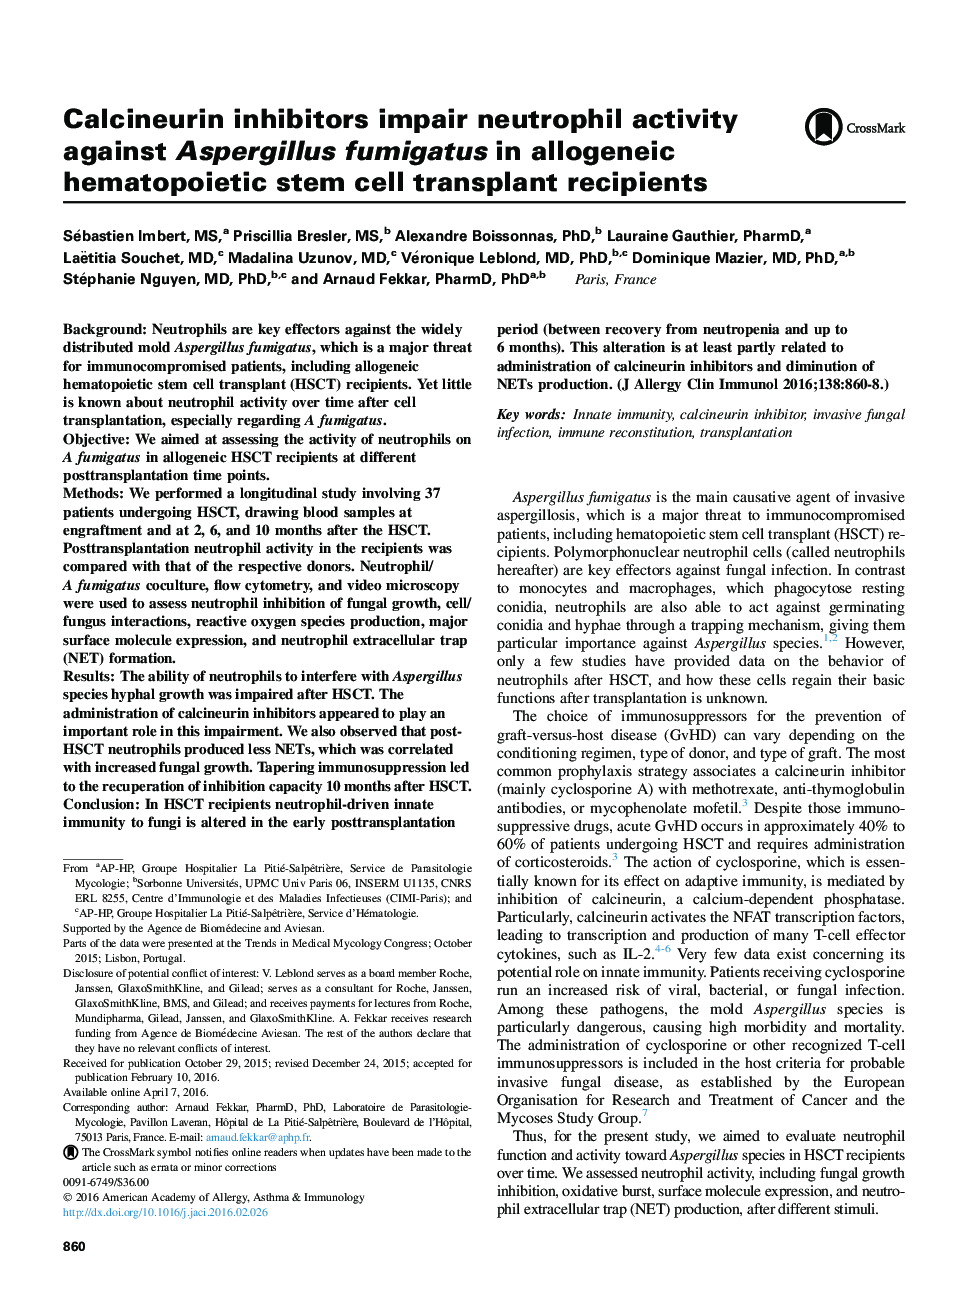 Calcineurin inhibitors impair neutrophil activity against Aspergillus fumigatus in allogeneic hematopoietic stem cell transplant recipients